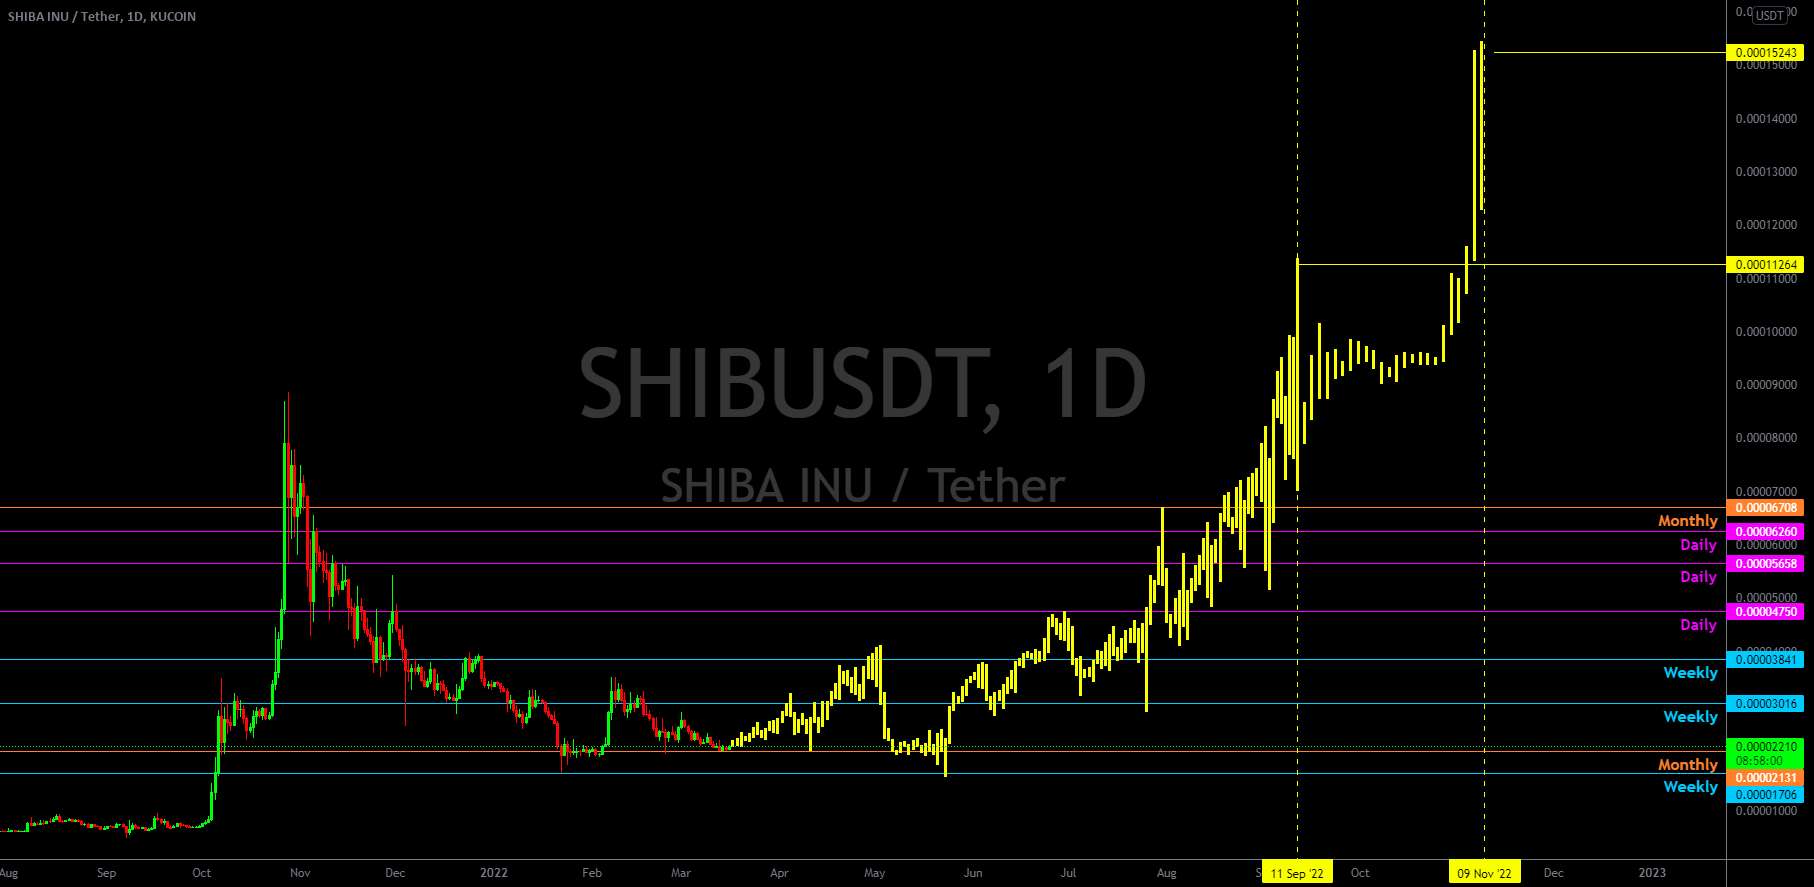  تحلیل شیبا - SHIBA INU - SHIB - پیش بینی قیمت 2022